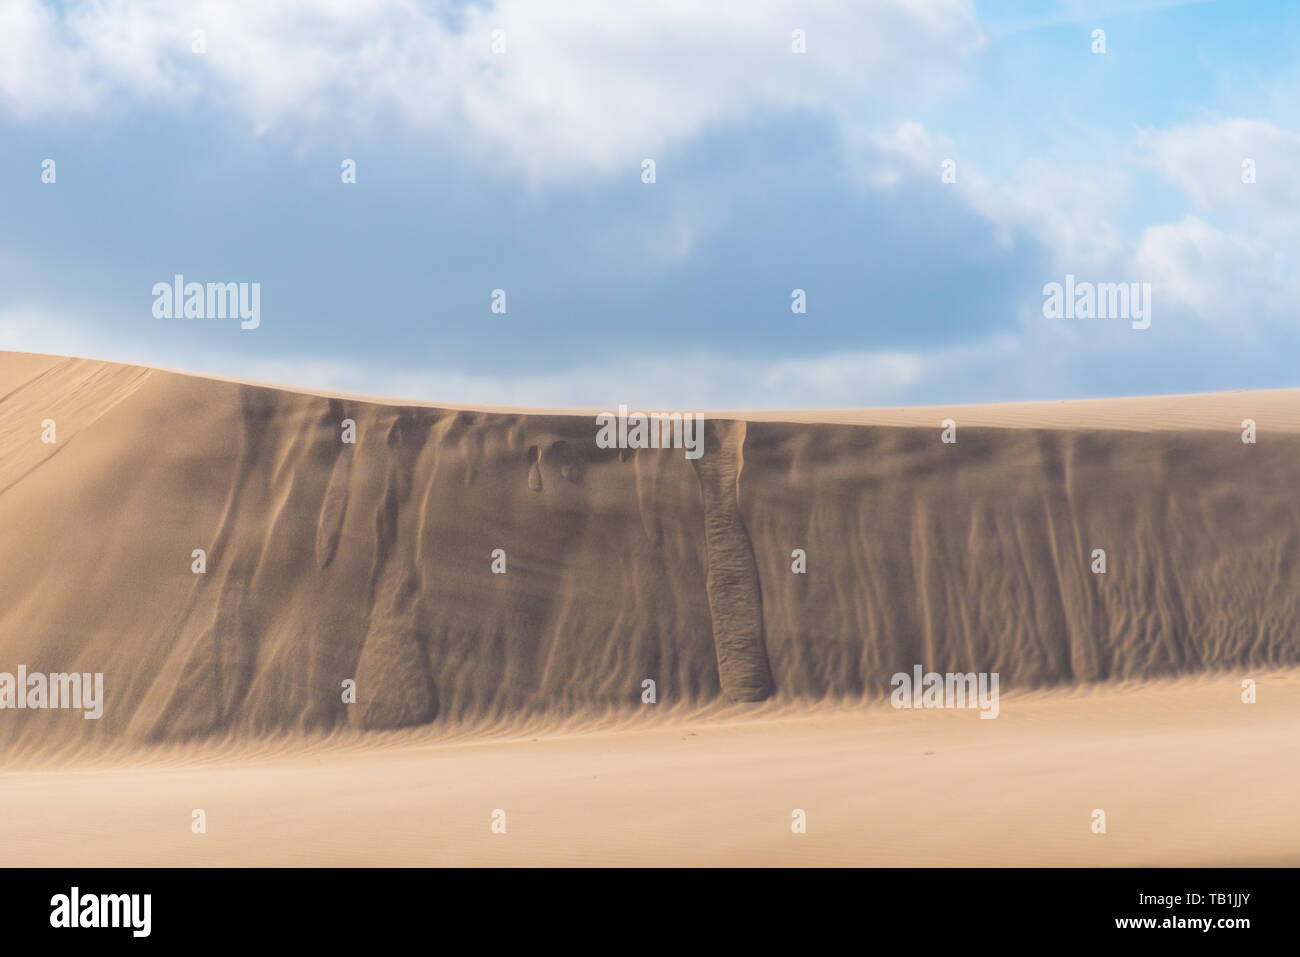 Windy desert dune di sabbia in Danimarca. Piccoli ruscelli di sabbia mostra quanto le dune si muovono. Bellissimo cielo nuvoloso. Foto Stock